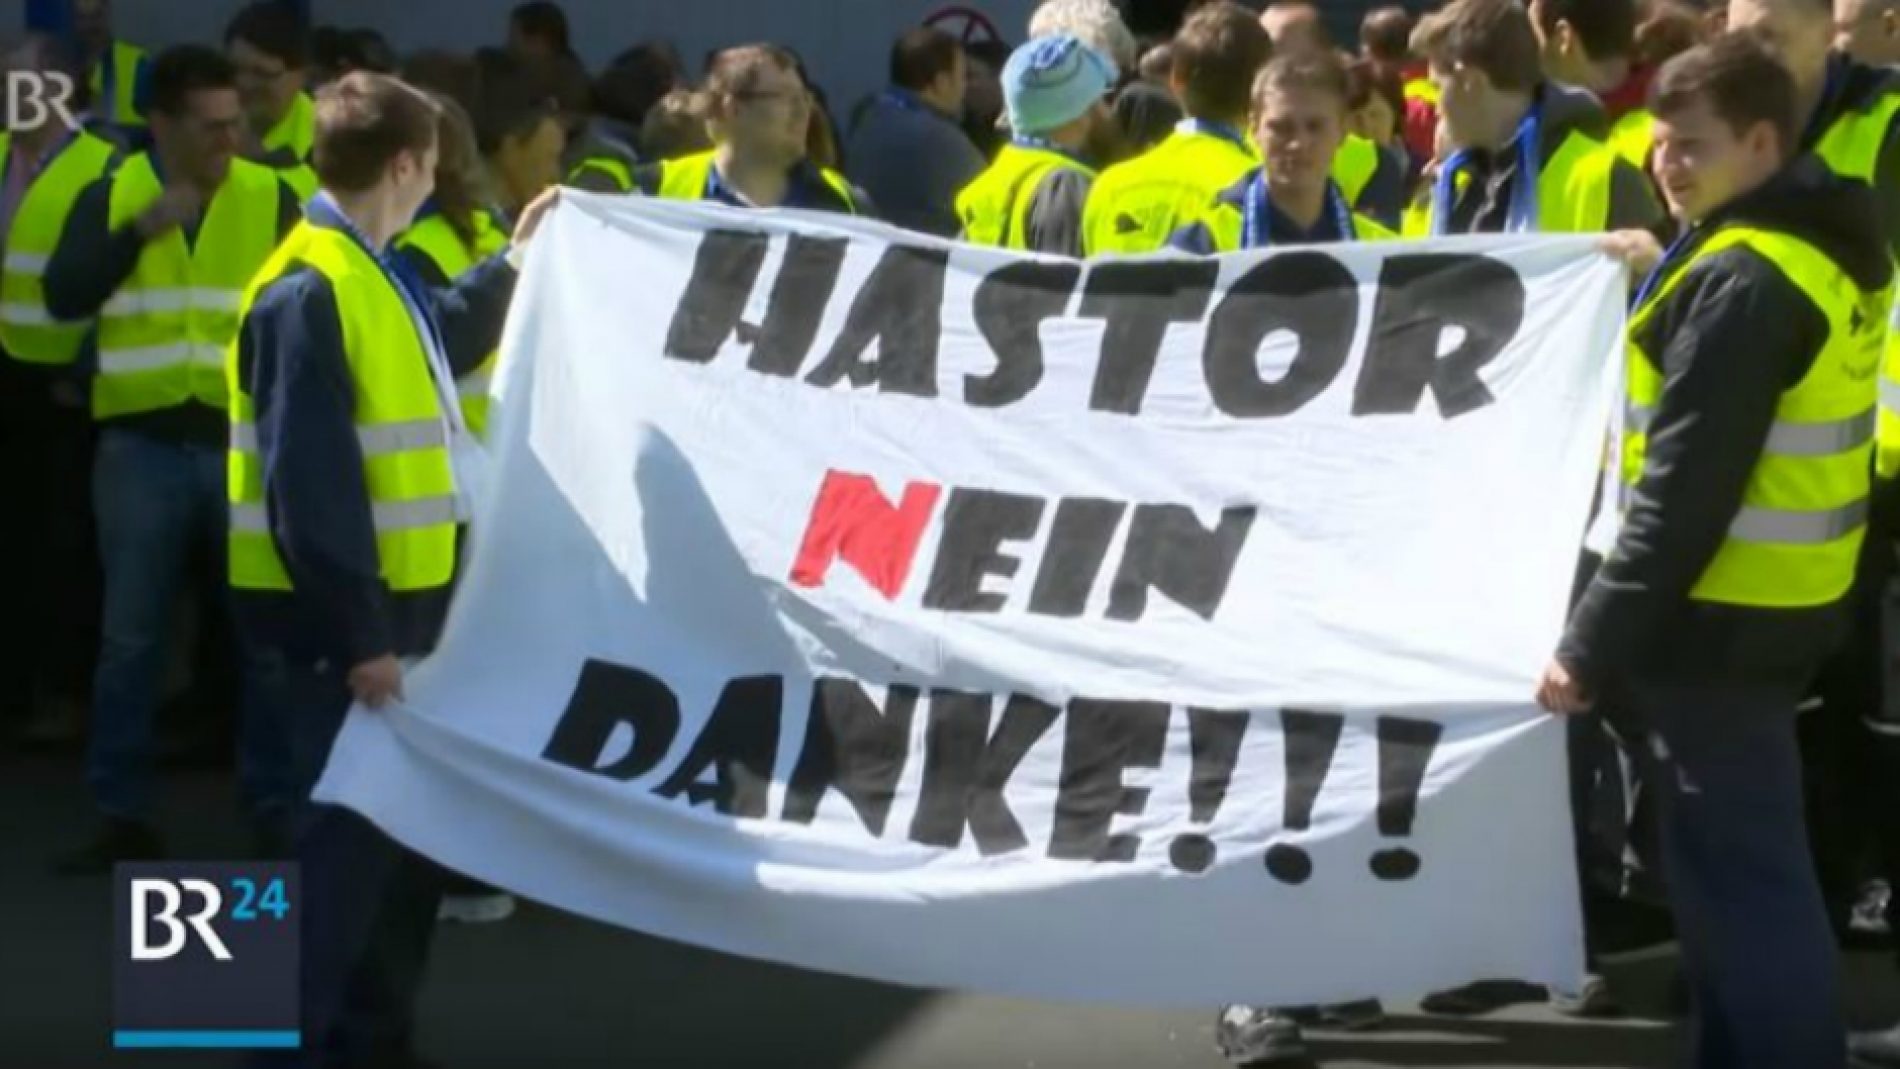 Dok u Bosni otvorenih ruku dočekuje njemačke investitore, u Njemačkoj protestuju protiv Hastora (Video)